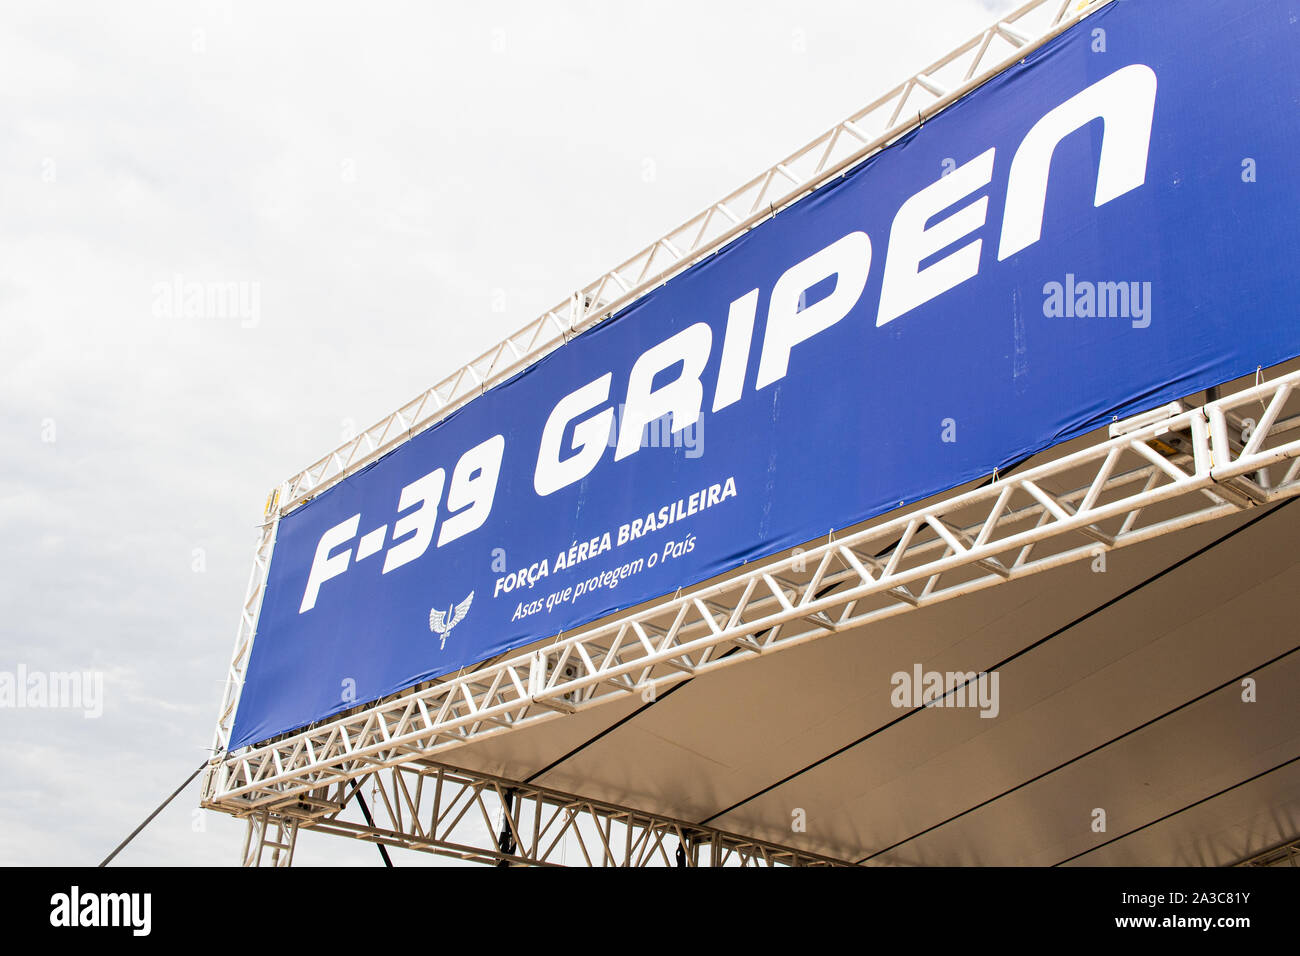 Photo d'un F39 à partir de la marque suédoise Saab Gripen. Exposition de l'acquisition des modèles par le gouvernement brésilien. Banque D'Images